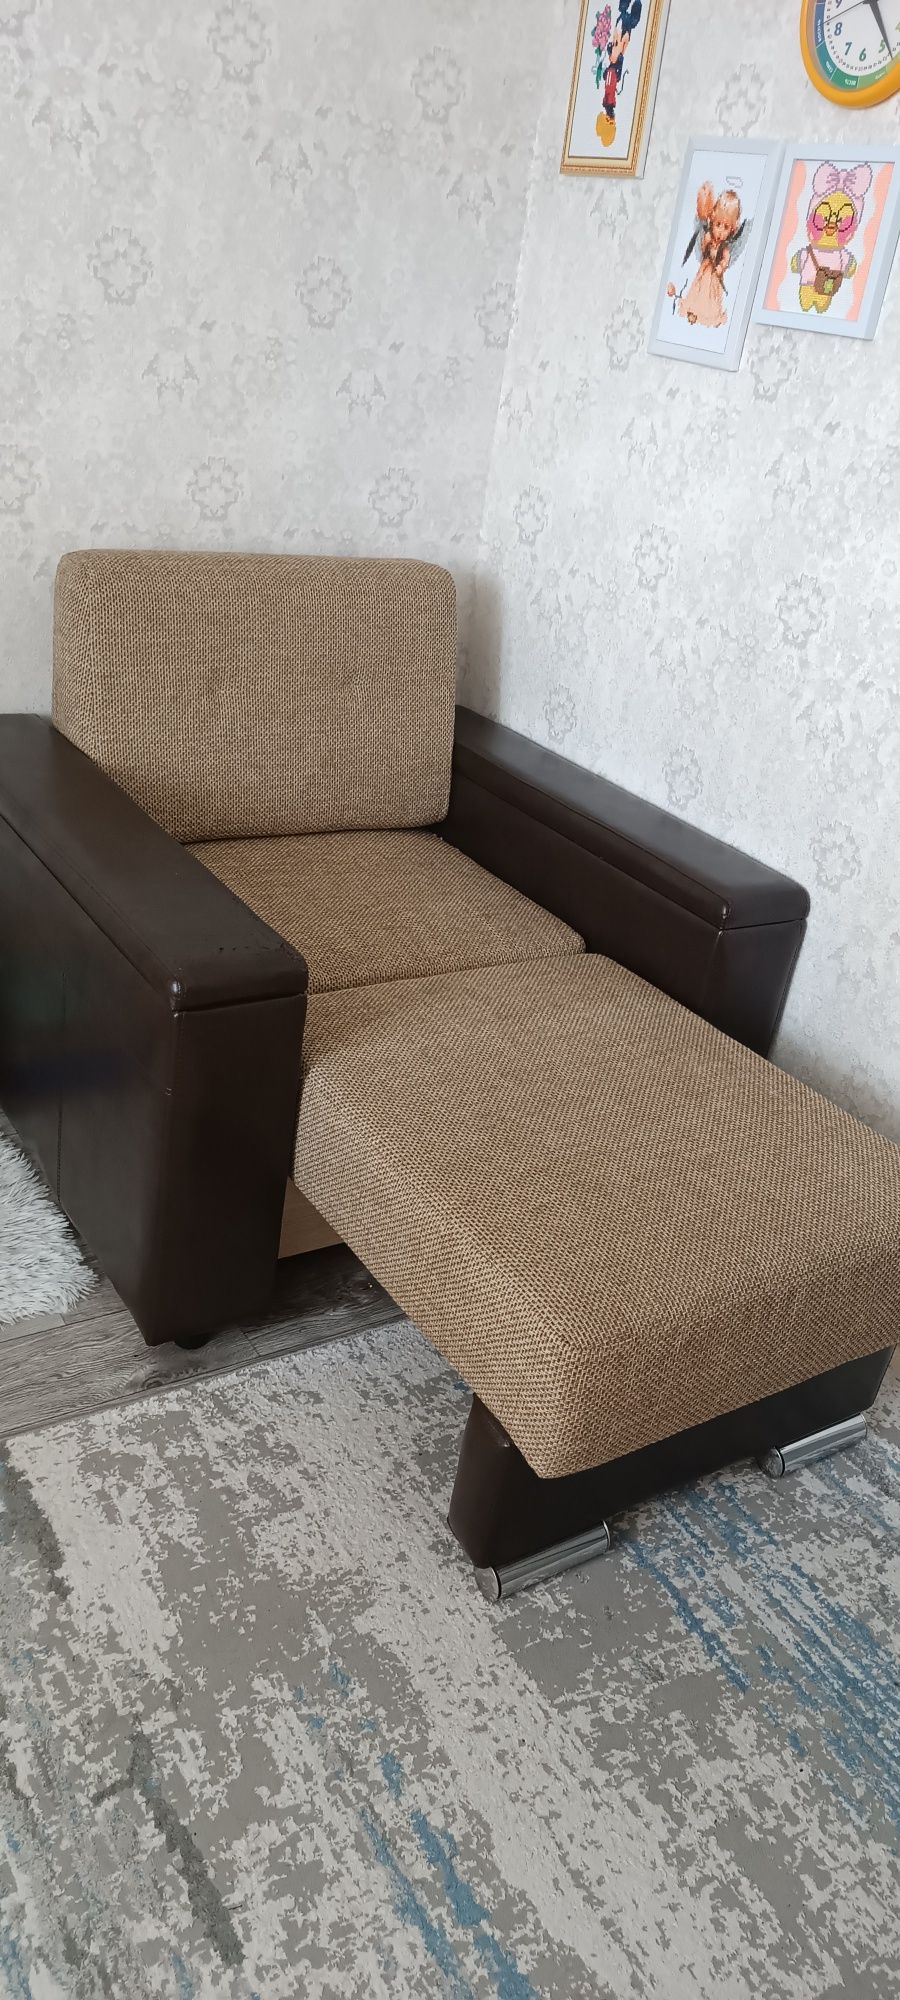 Кресло - кровать, цена 59000!